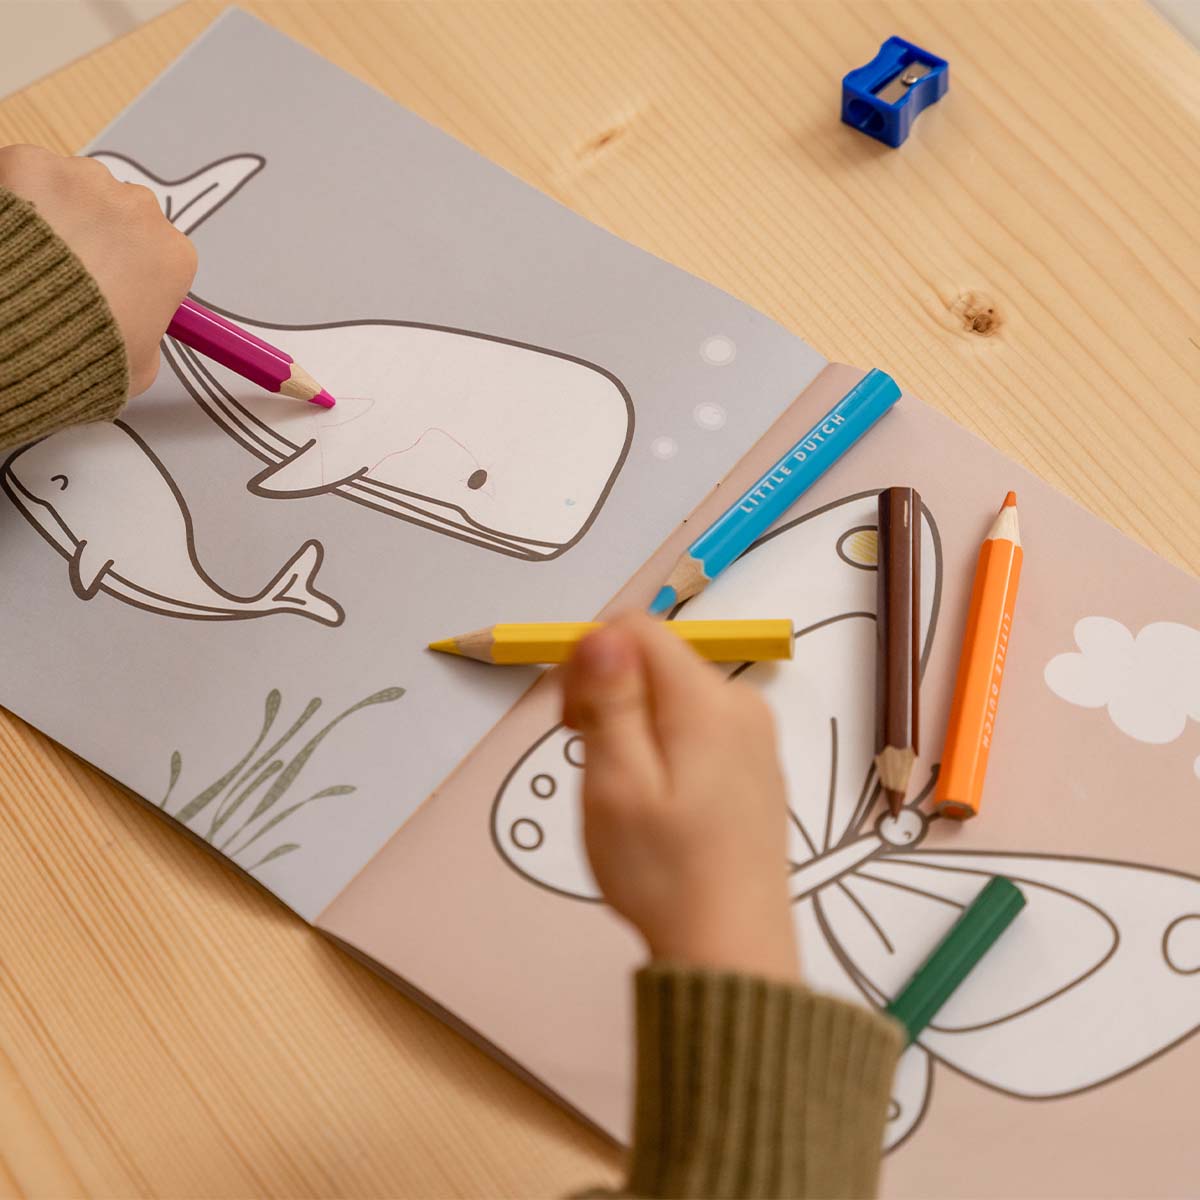 Het is tijd om lekker creatief aan de slag te gaan! Dit kleurboek van Little Dutch van 20 x 20 cm is perfect voor alle kleine kunstenaars. Het kleurboekje is gemaakt van stevig papier en bestaat uit 24 leuke tekeningen die simpel en toch interessant zijn. 